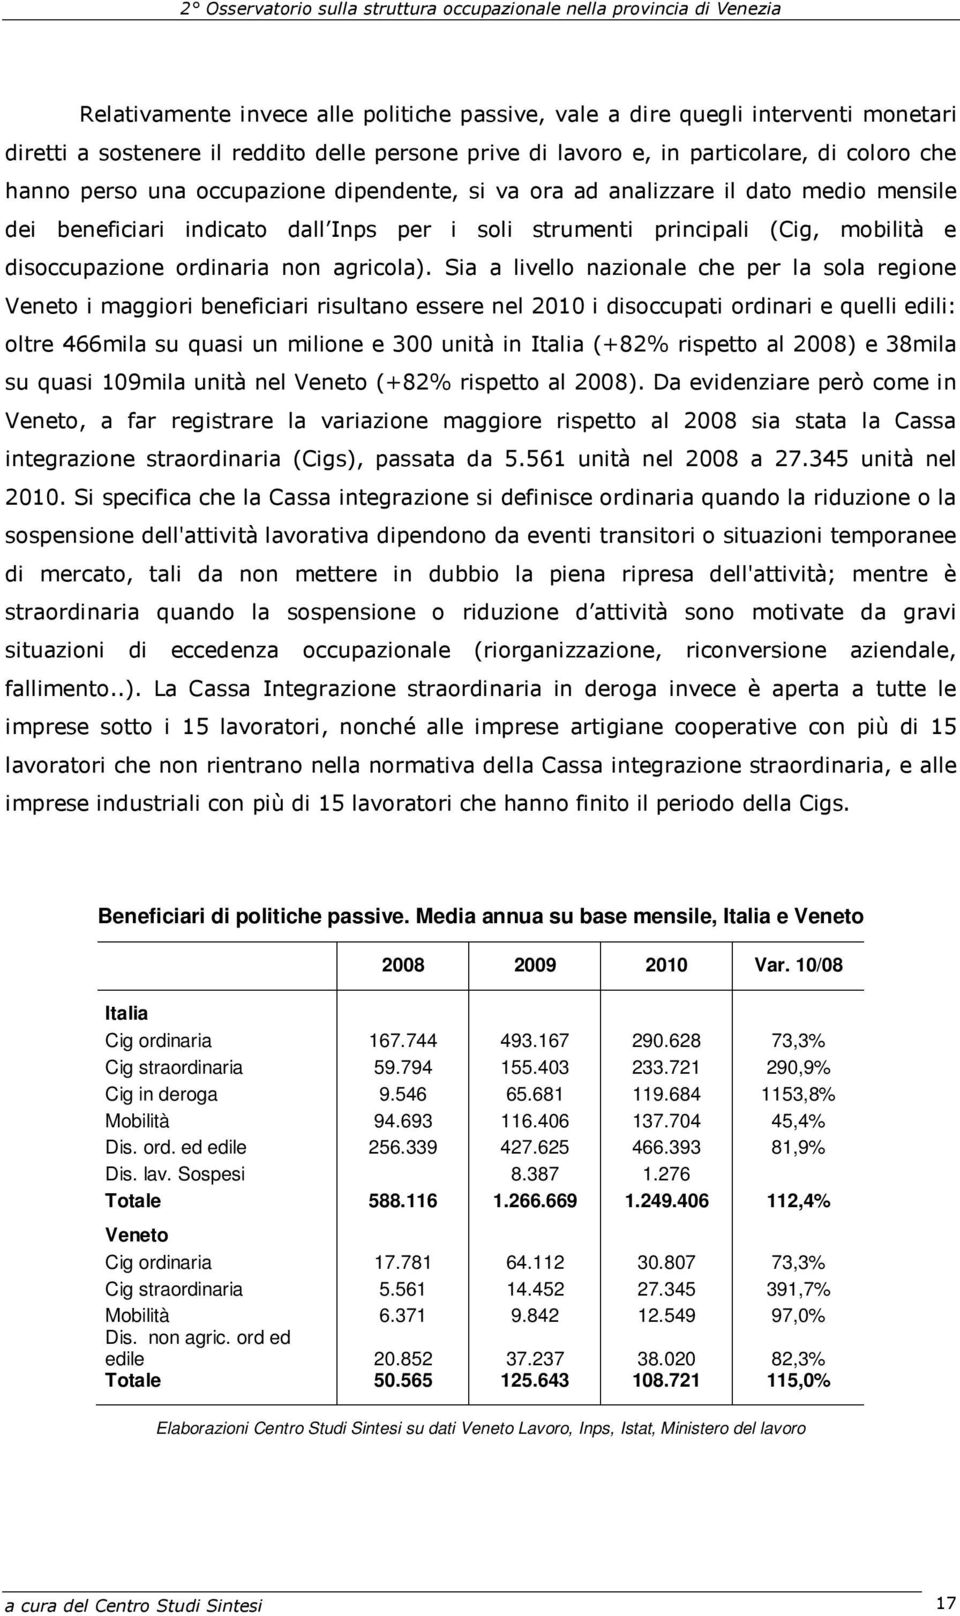 Sia a livello nazionale che per la sola regione Veneto i maggiori beneficiari risultano essere nel 2010 i disoccupati ordinari e quelli edili: oltre 466mila su quasi un milione e 300 unità in Italia